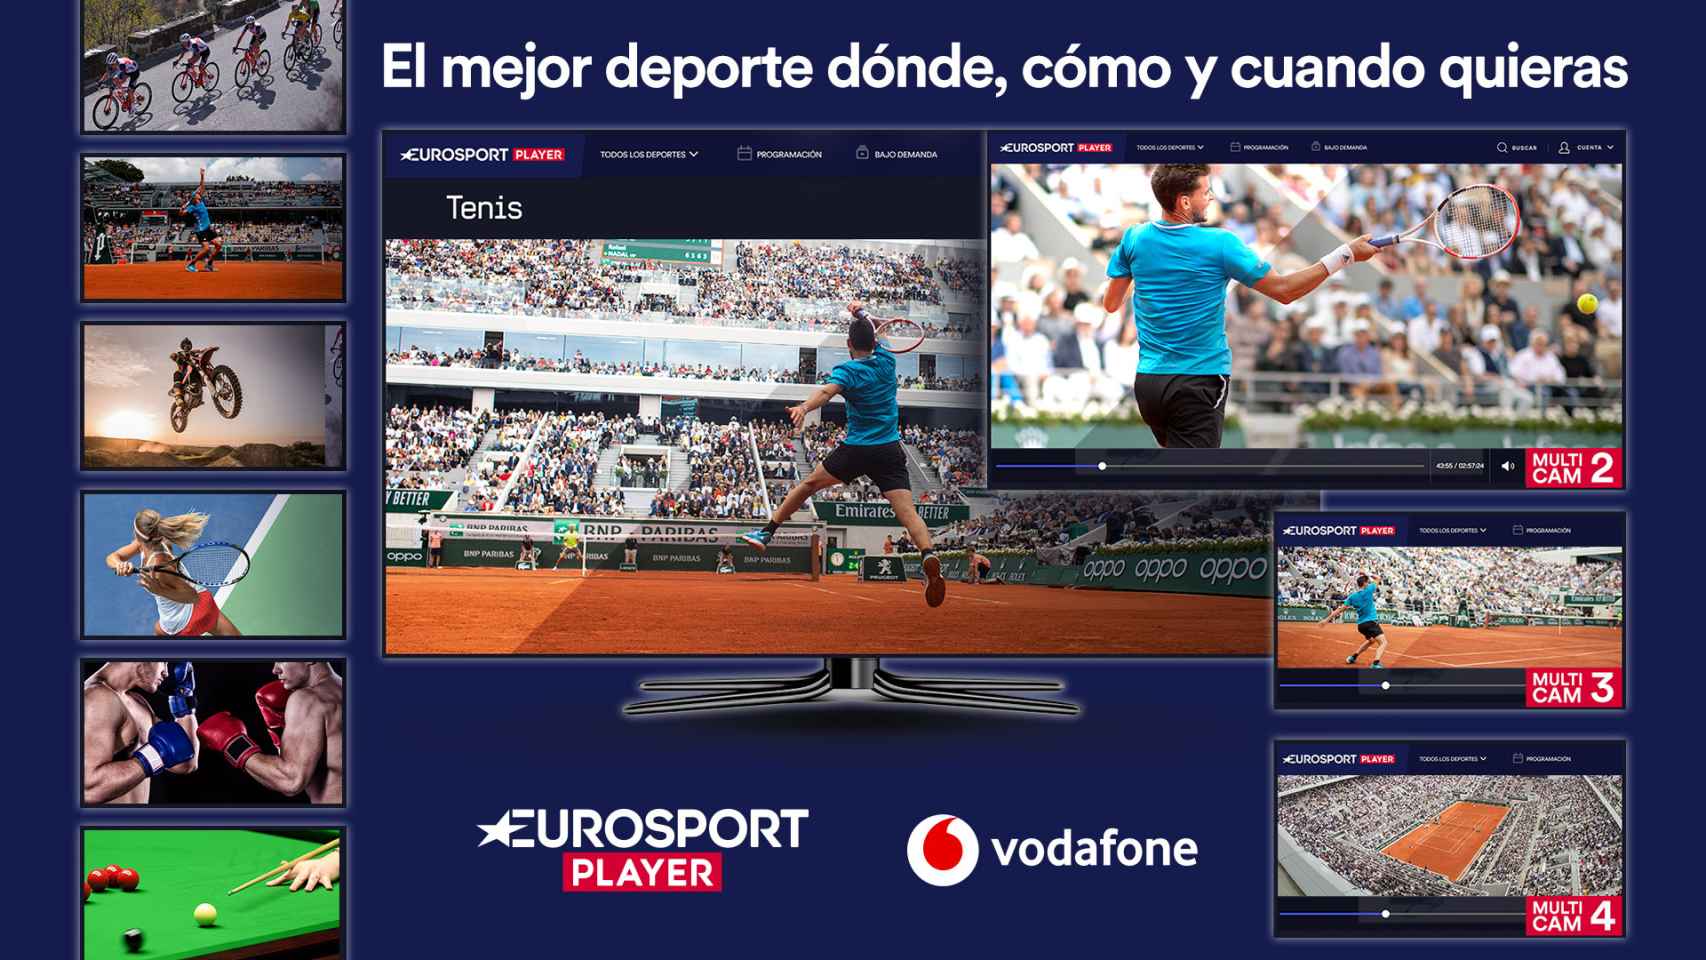 El servicio estará disponible a partir de hoy para los usuarios de Vodafone TV que tengan contratado el pack de deportes.